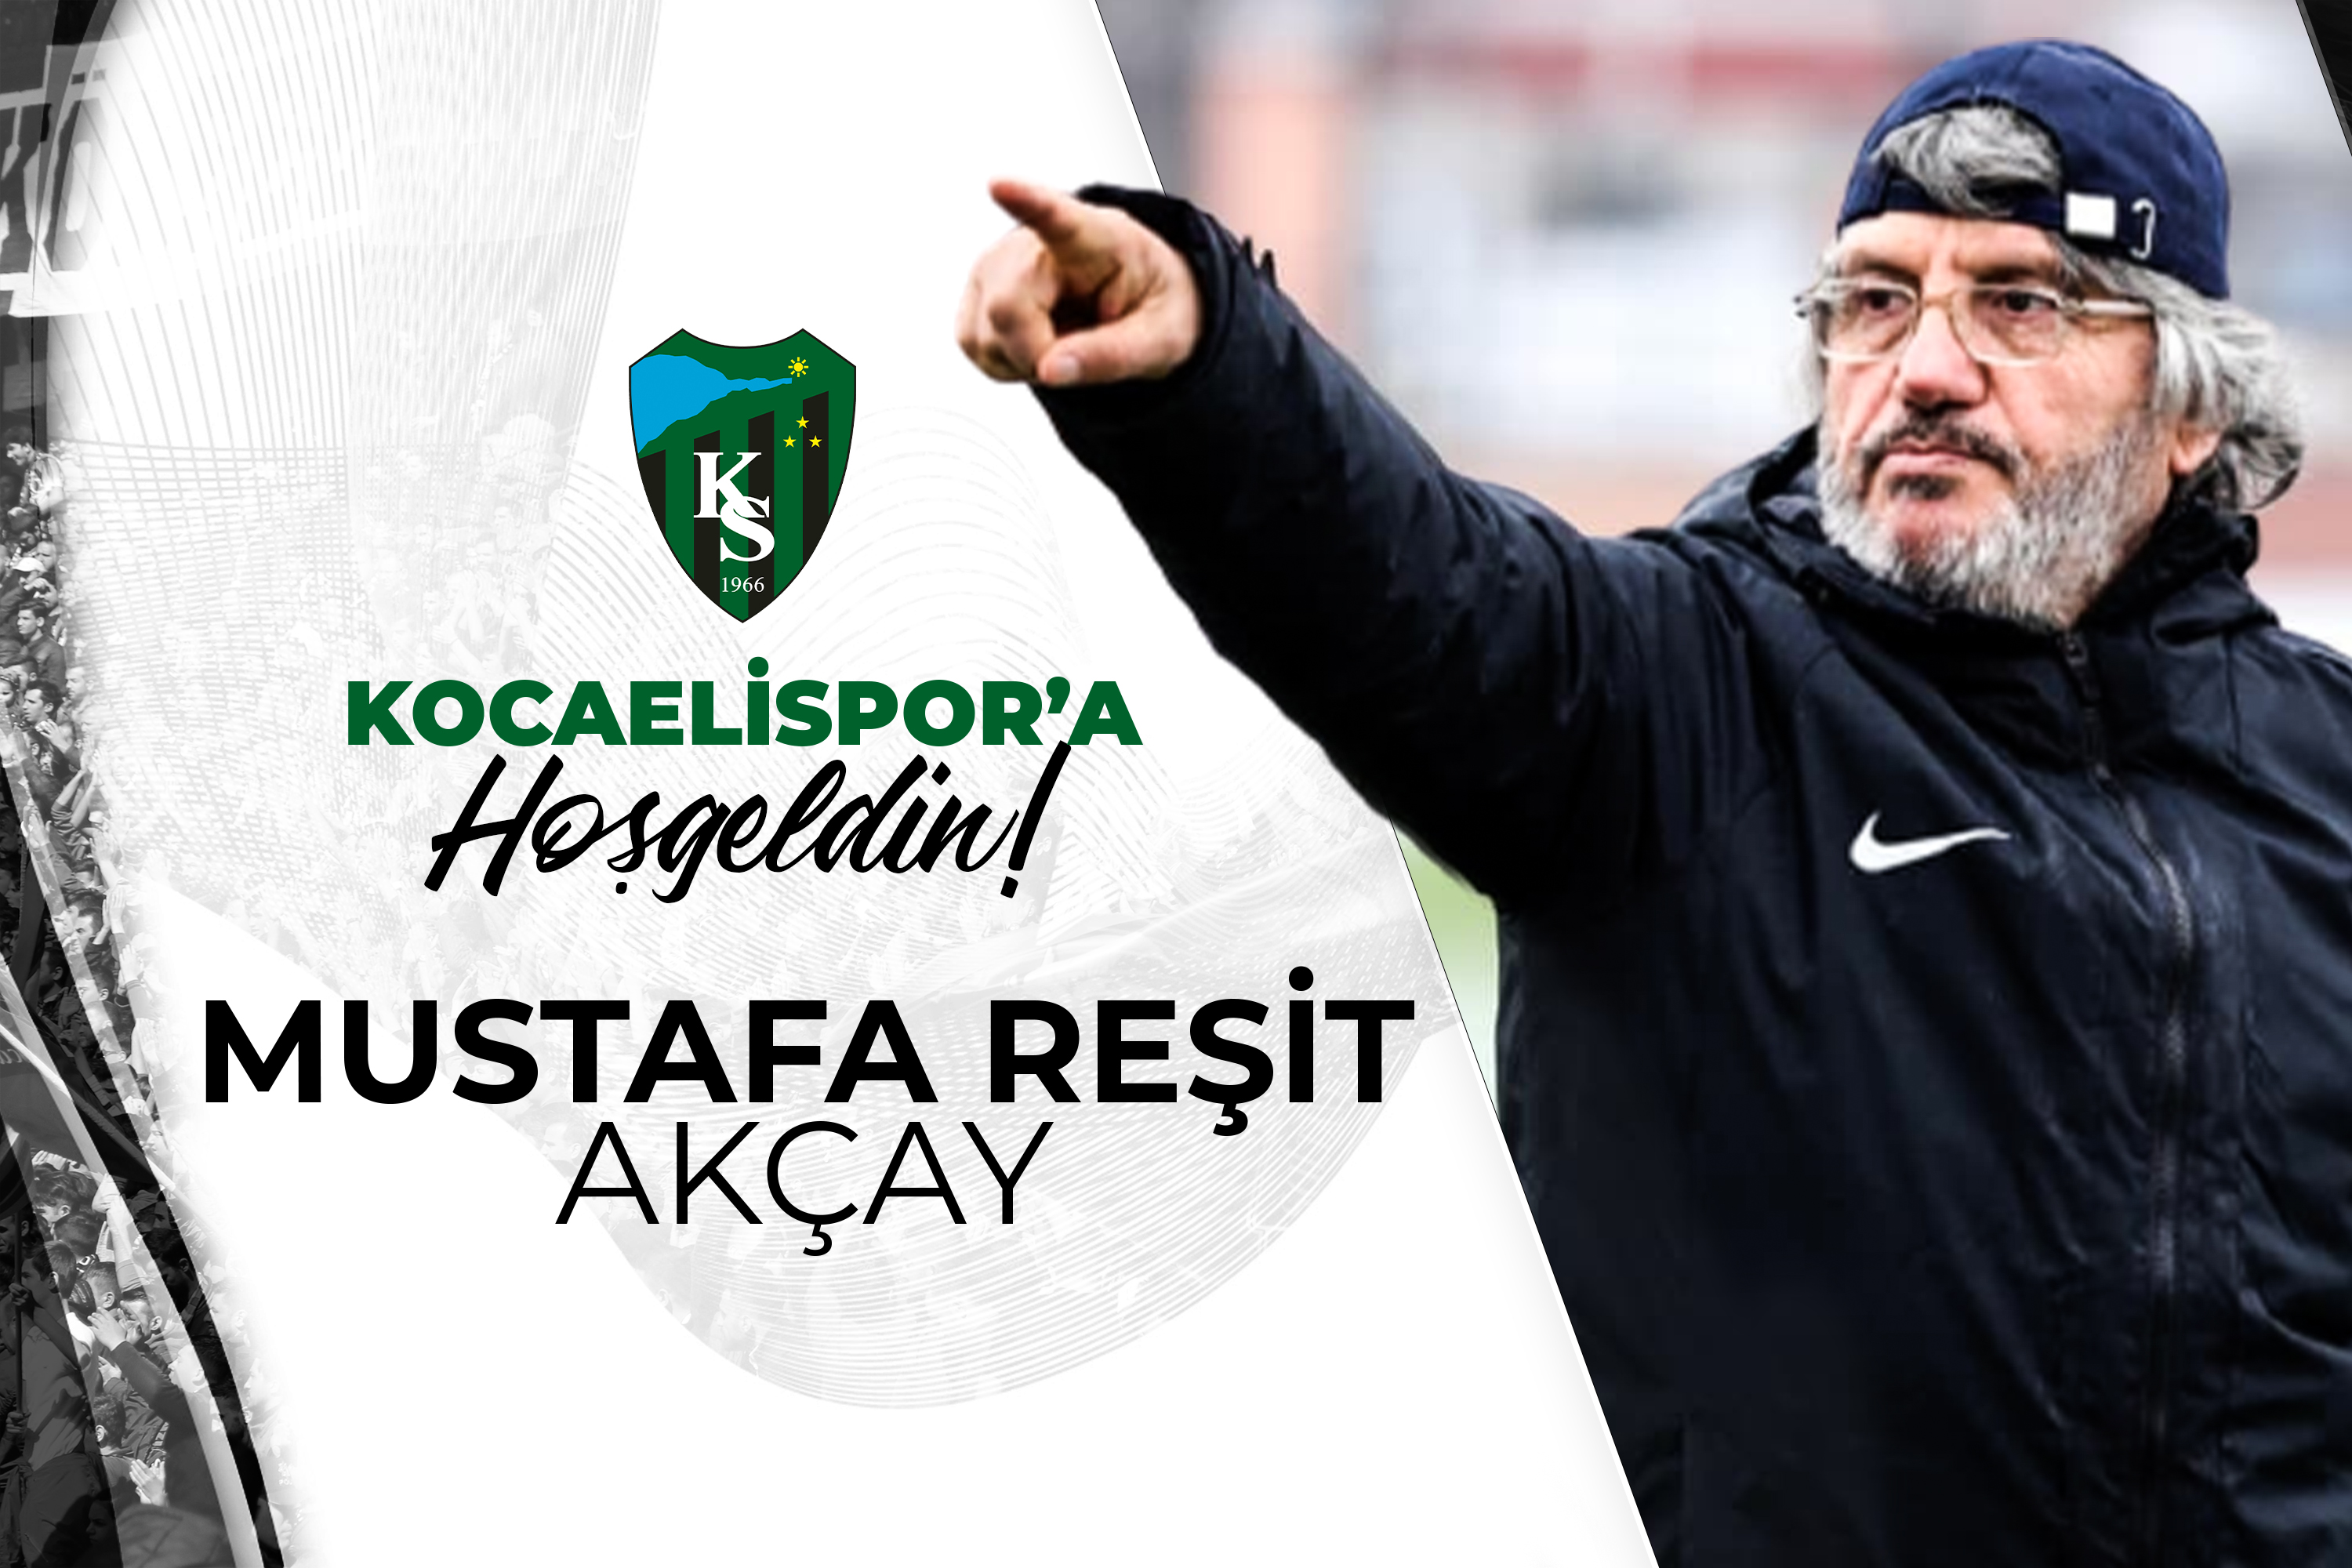 Kocaelispor'a Hoşgeldin Mustafa Reşit Akçay!